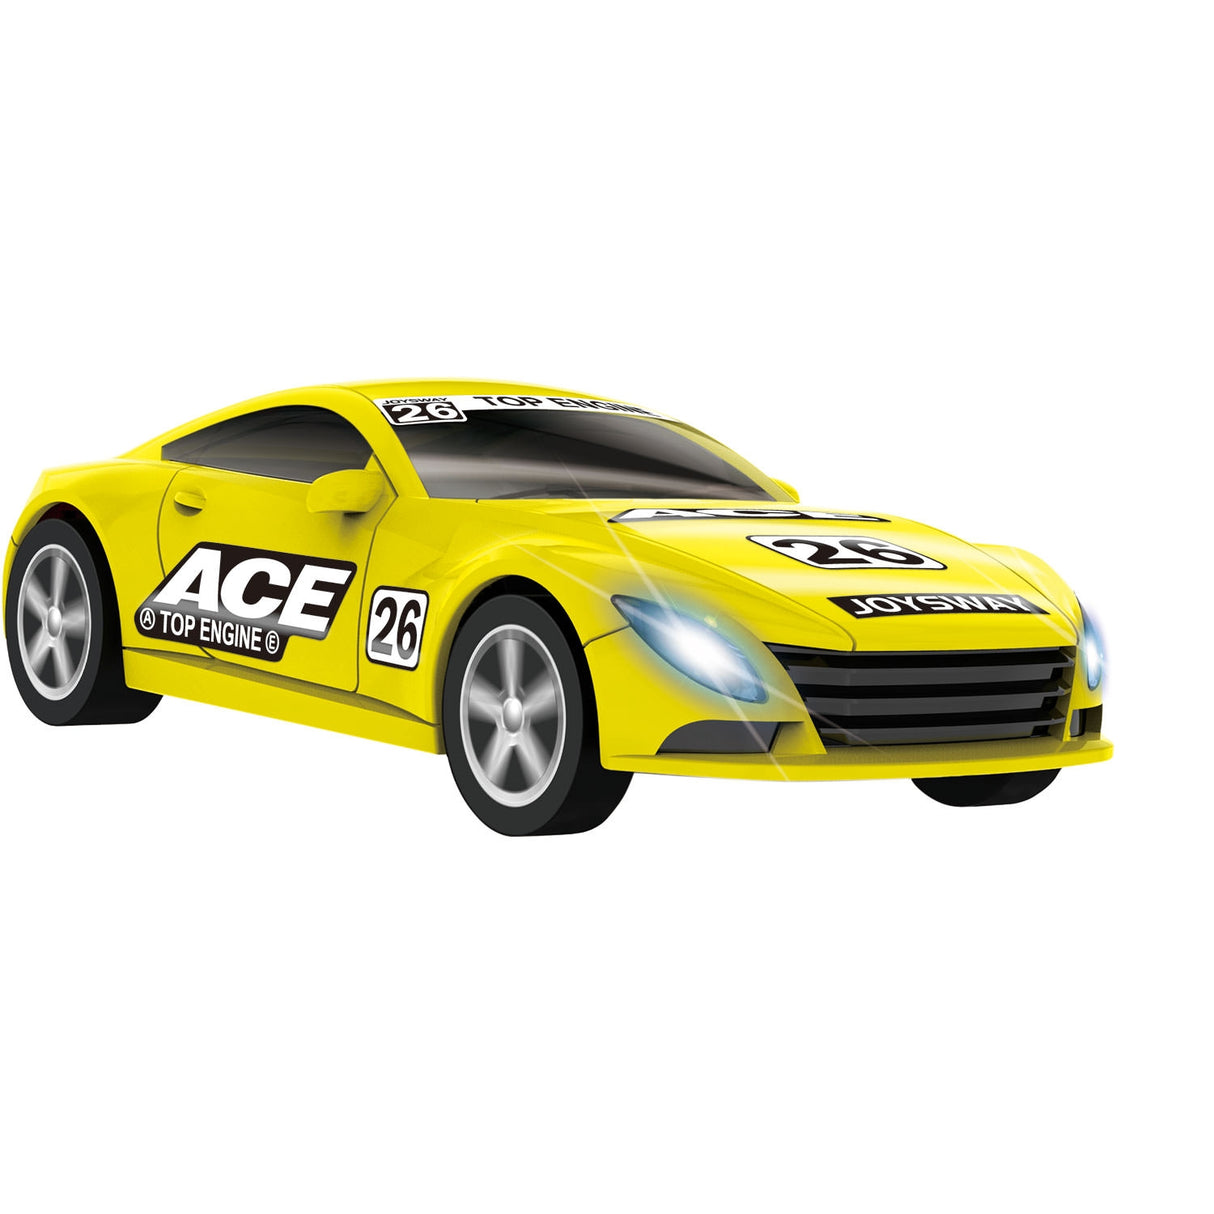 Joysway 1/43 Ace Yellow Racer Car Joysway SLOT CARS